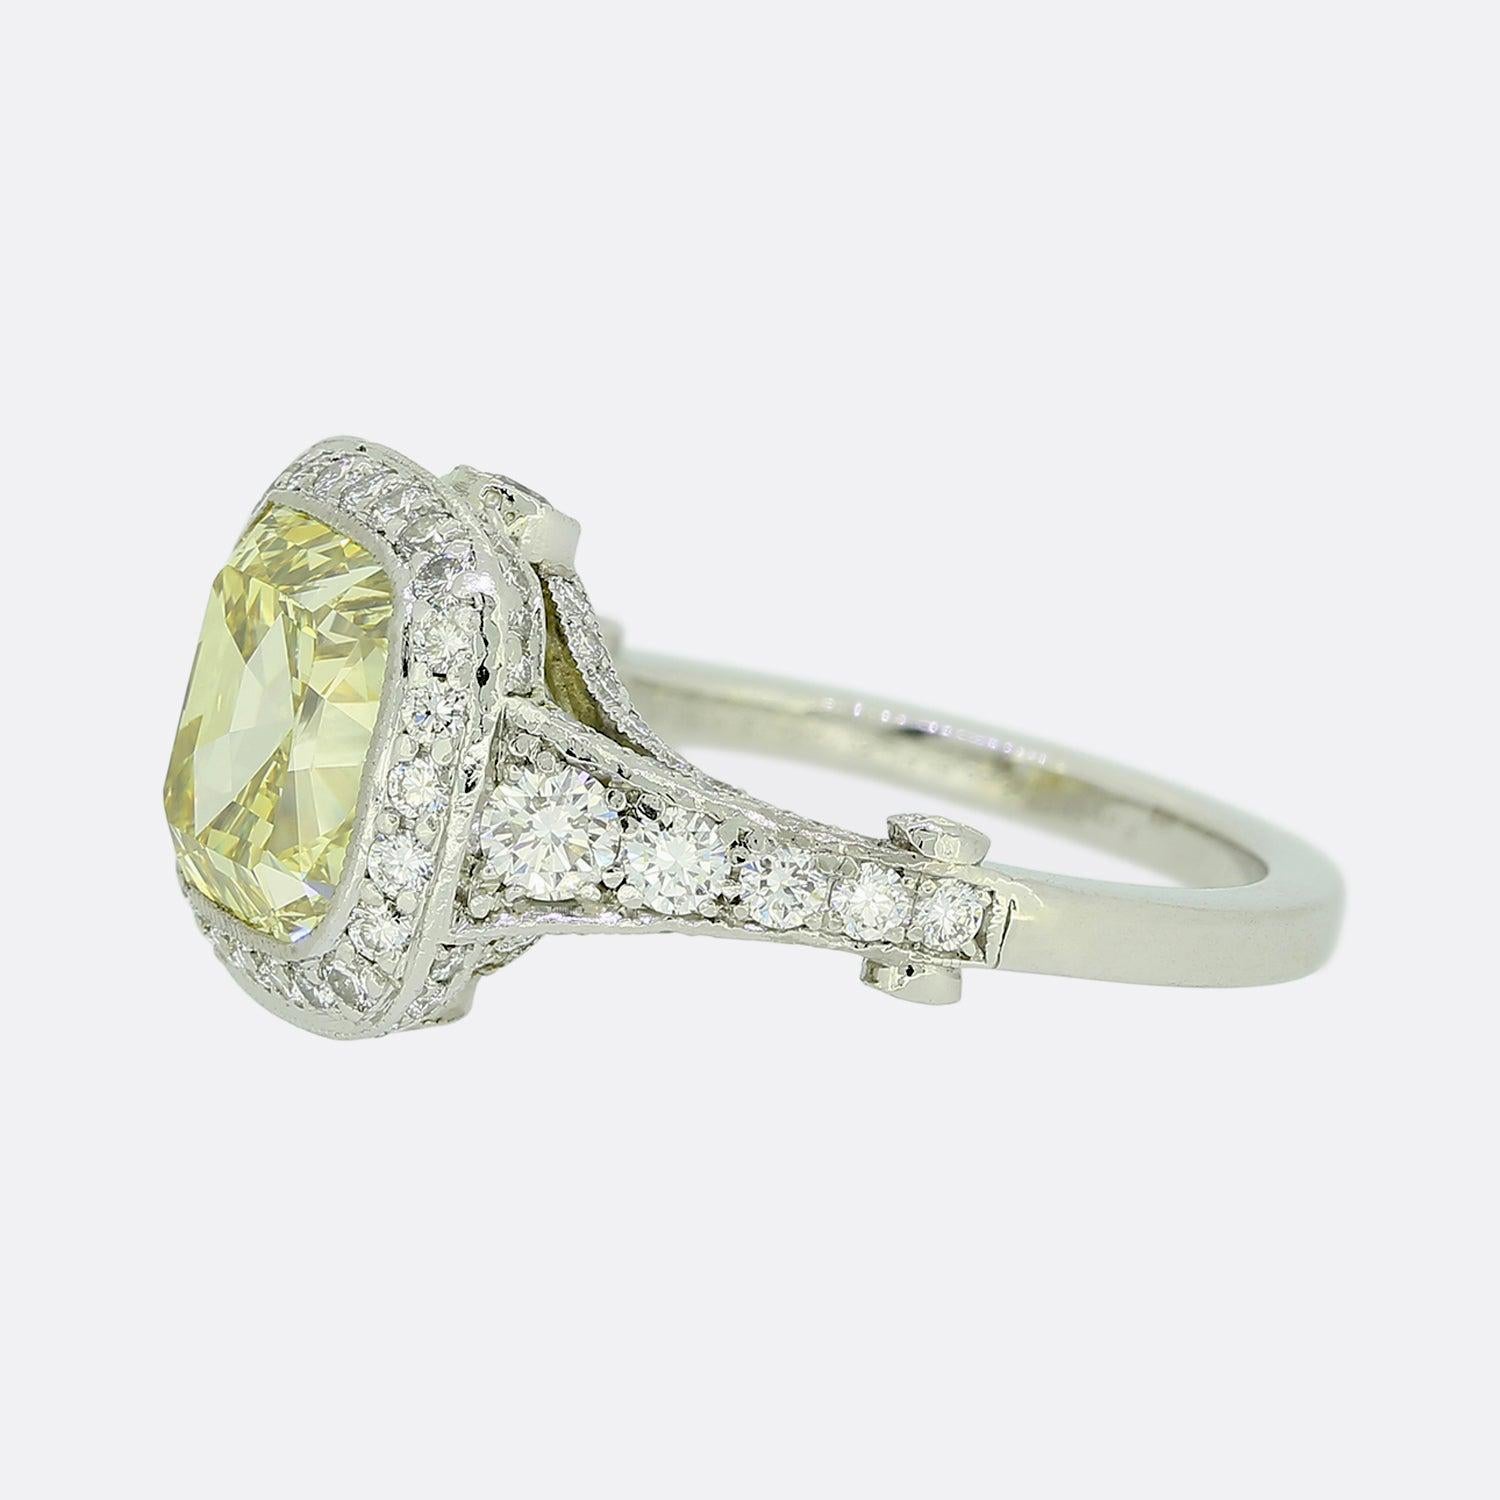 Hier haben wir einen schimmernden Diamant-Verlobungsring des weltbekannten Schmuckdesigners Tiffany & Co. Der Ring präsentiert einen 4,0 Karat schweren Stein im Kissenschliff, der intensiv gelb ist und eine Reinheit von VS1 aufweist. Er ist umgeben